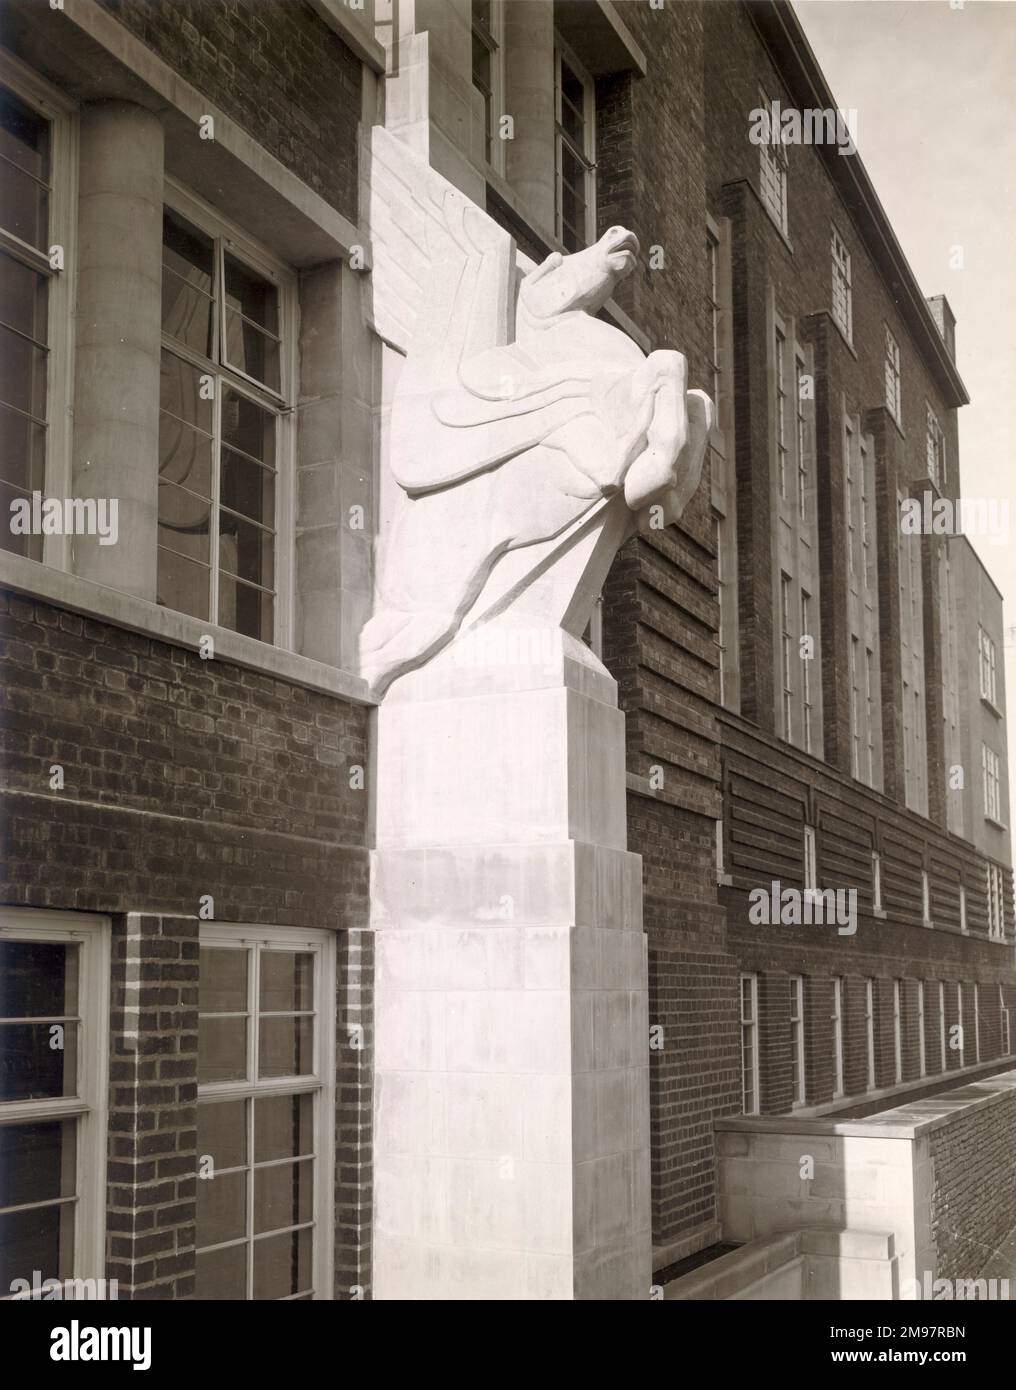 Pegasus on Filton House, die Verwaltungsbüros von Bristol Aeroplane, Co Ltd. c.1936. Stockfoto